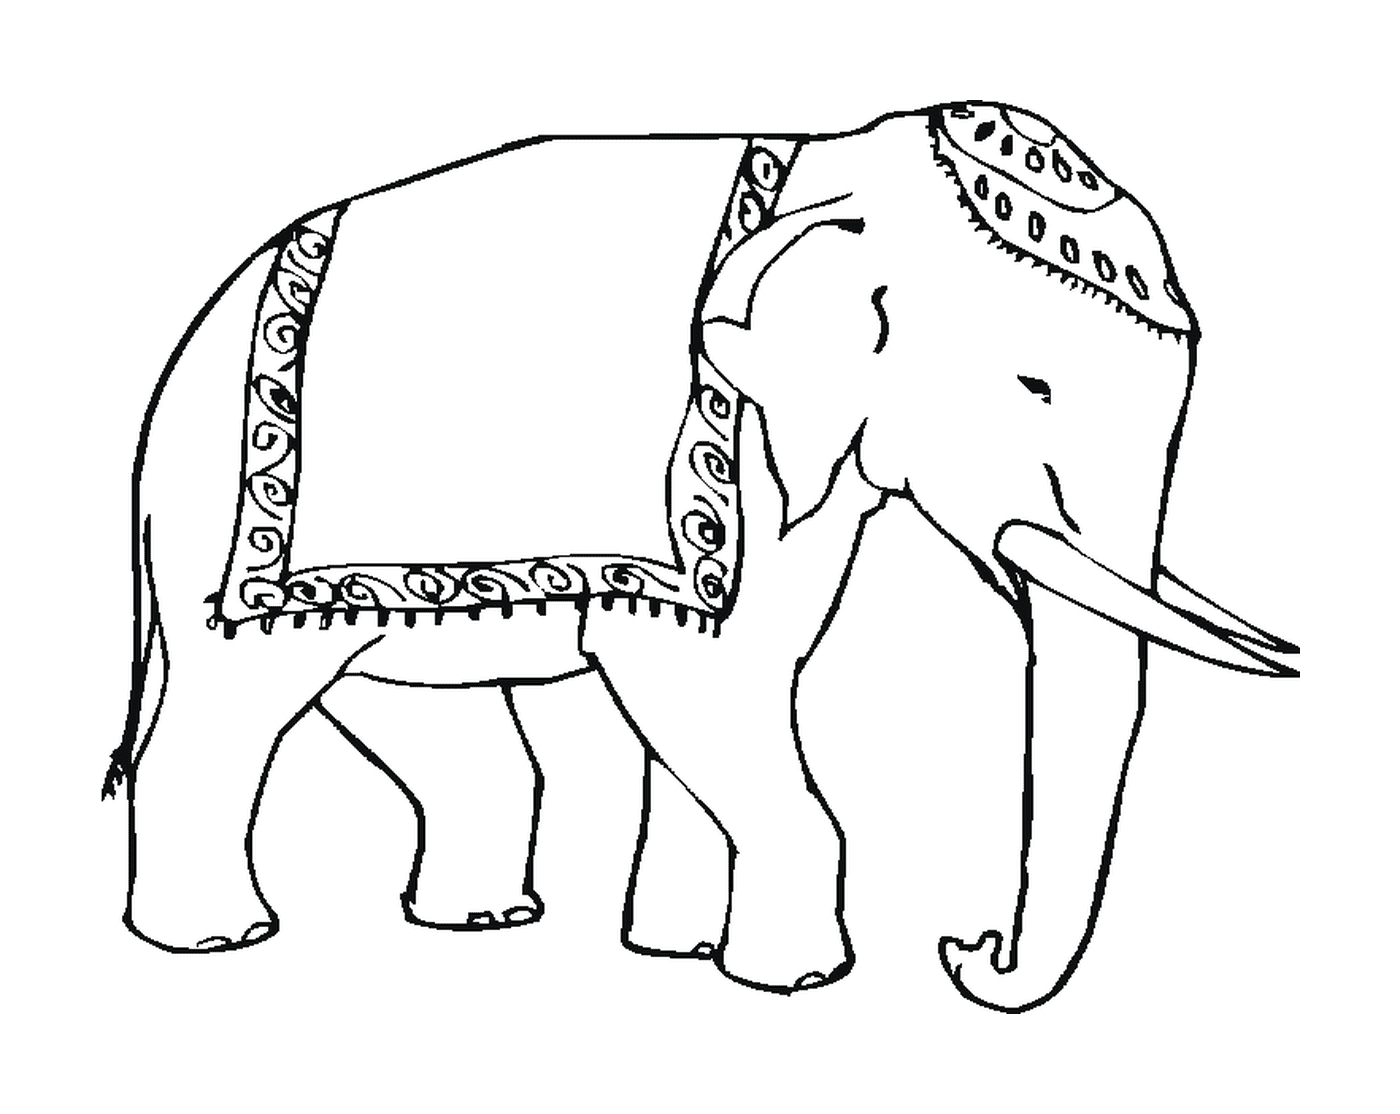  हाथी की पीठ पर एक चादर है 